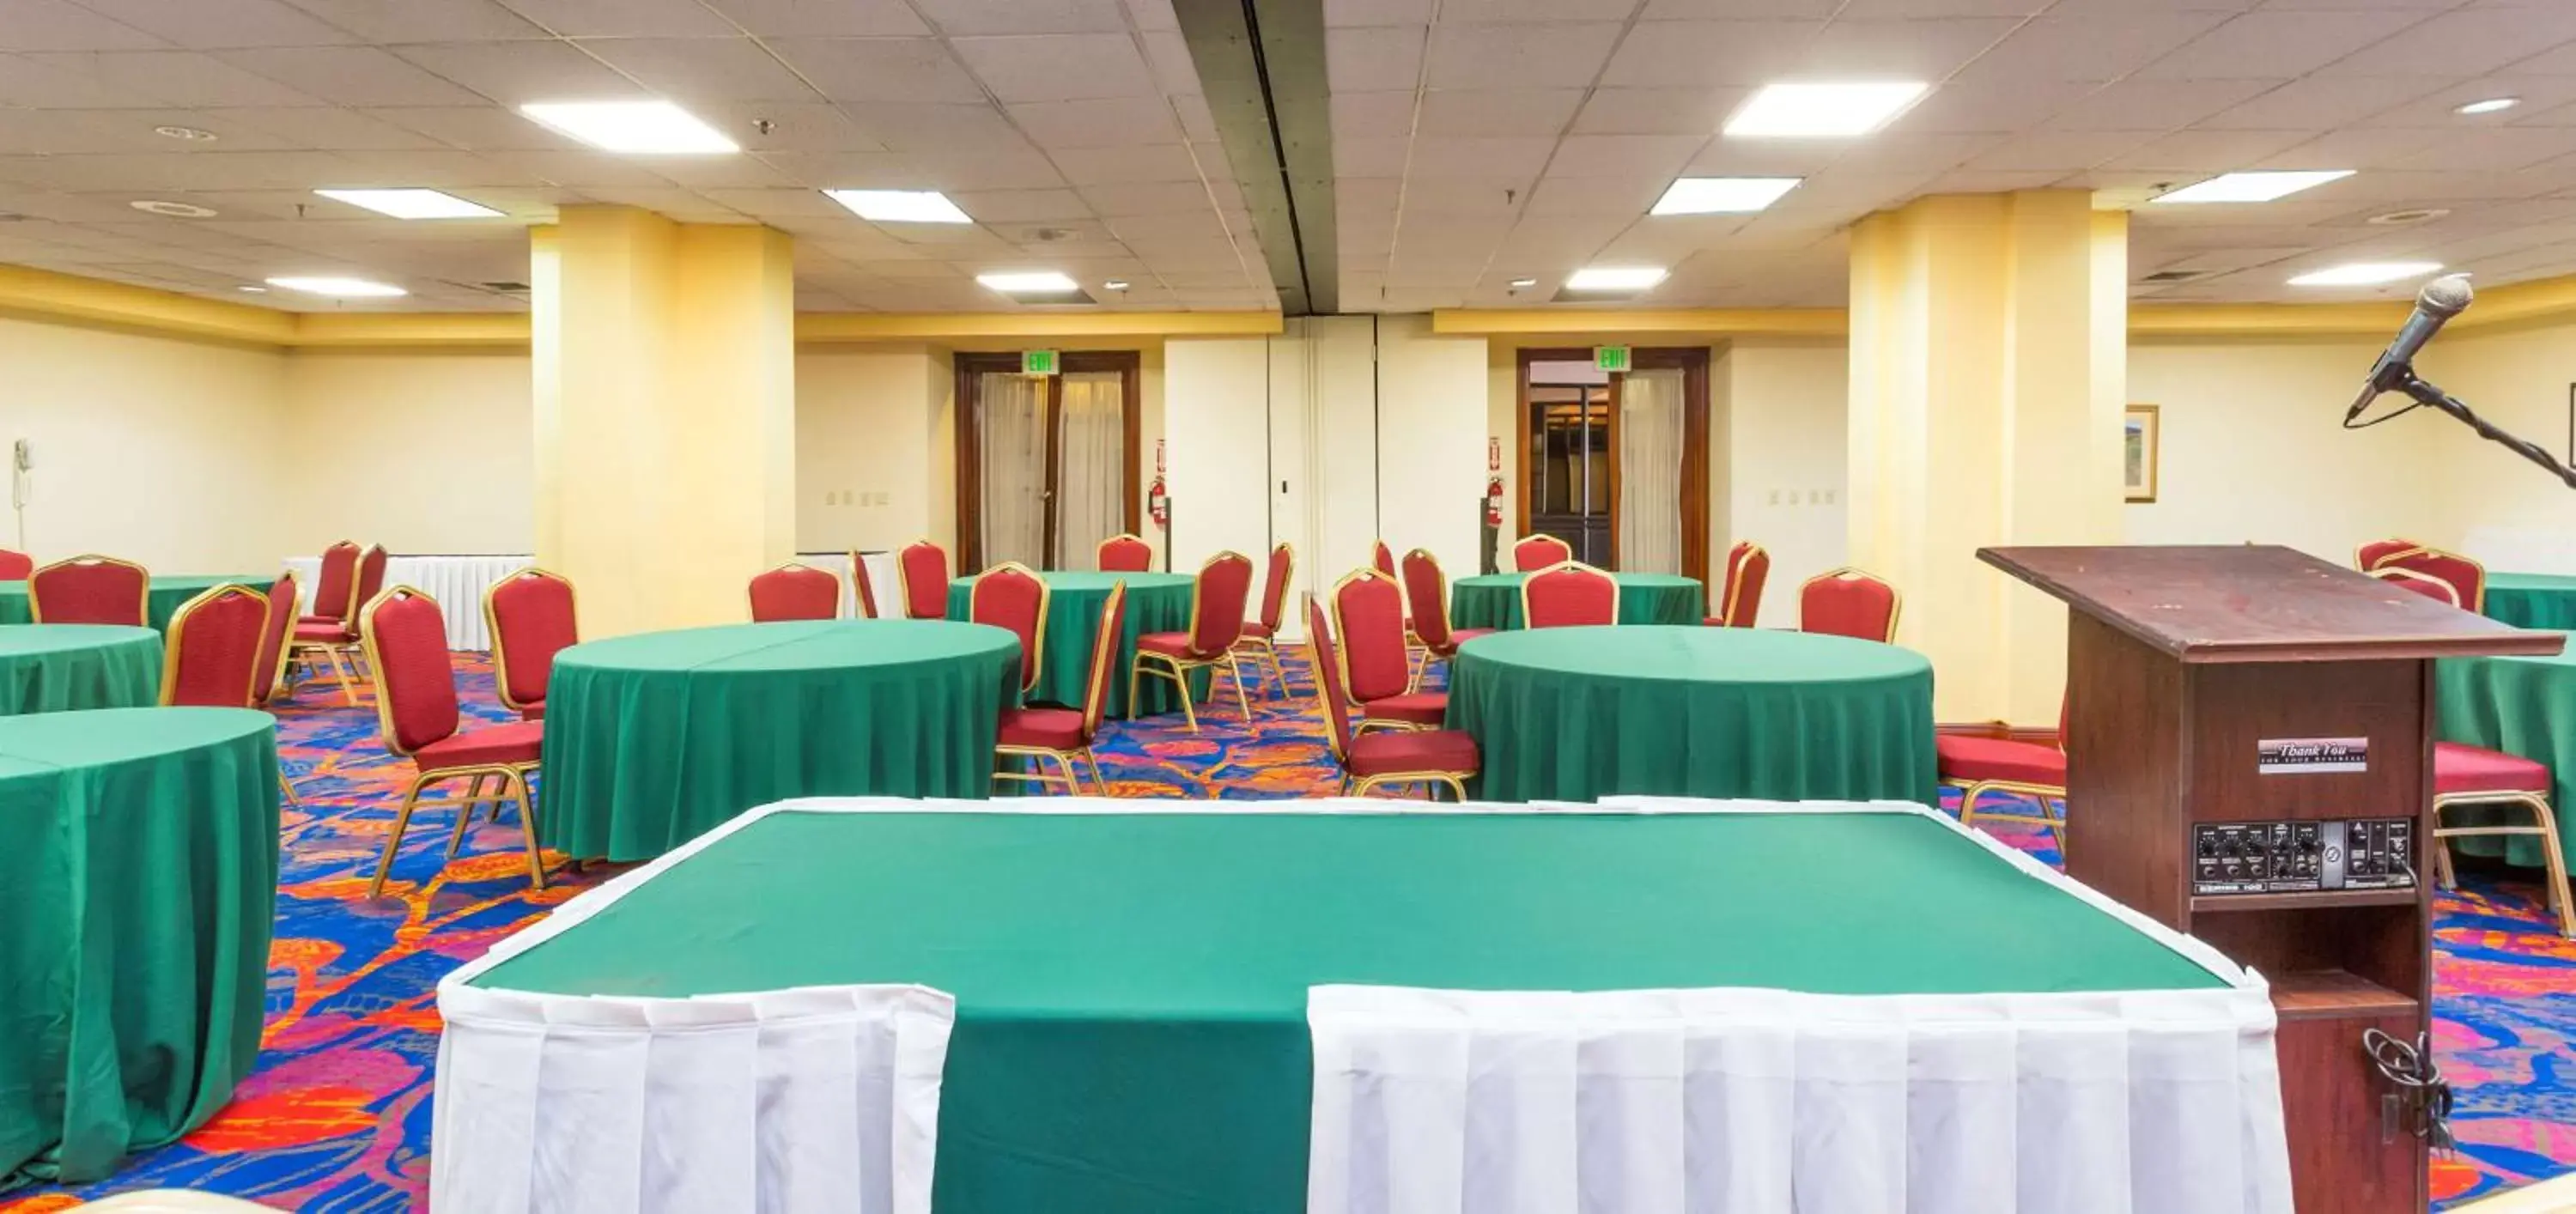 Banquet/Function facilities in Radisson Hotel Trinidad